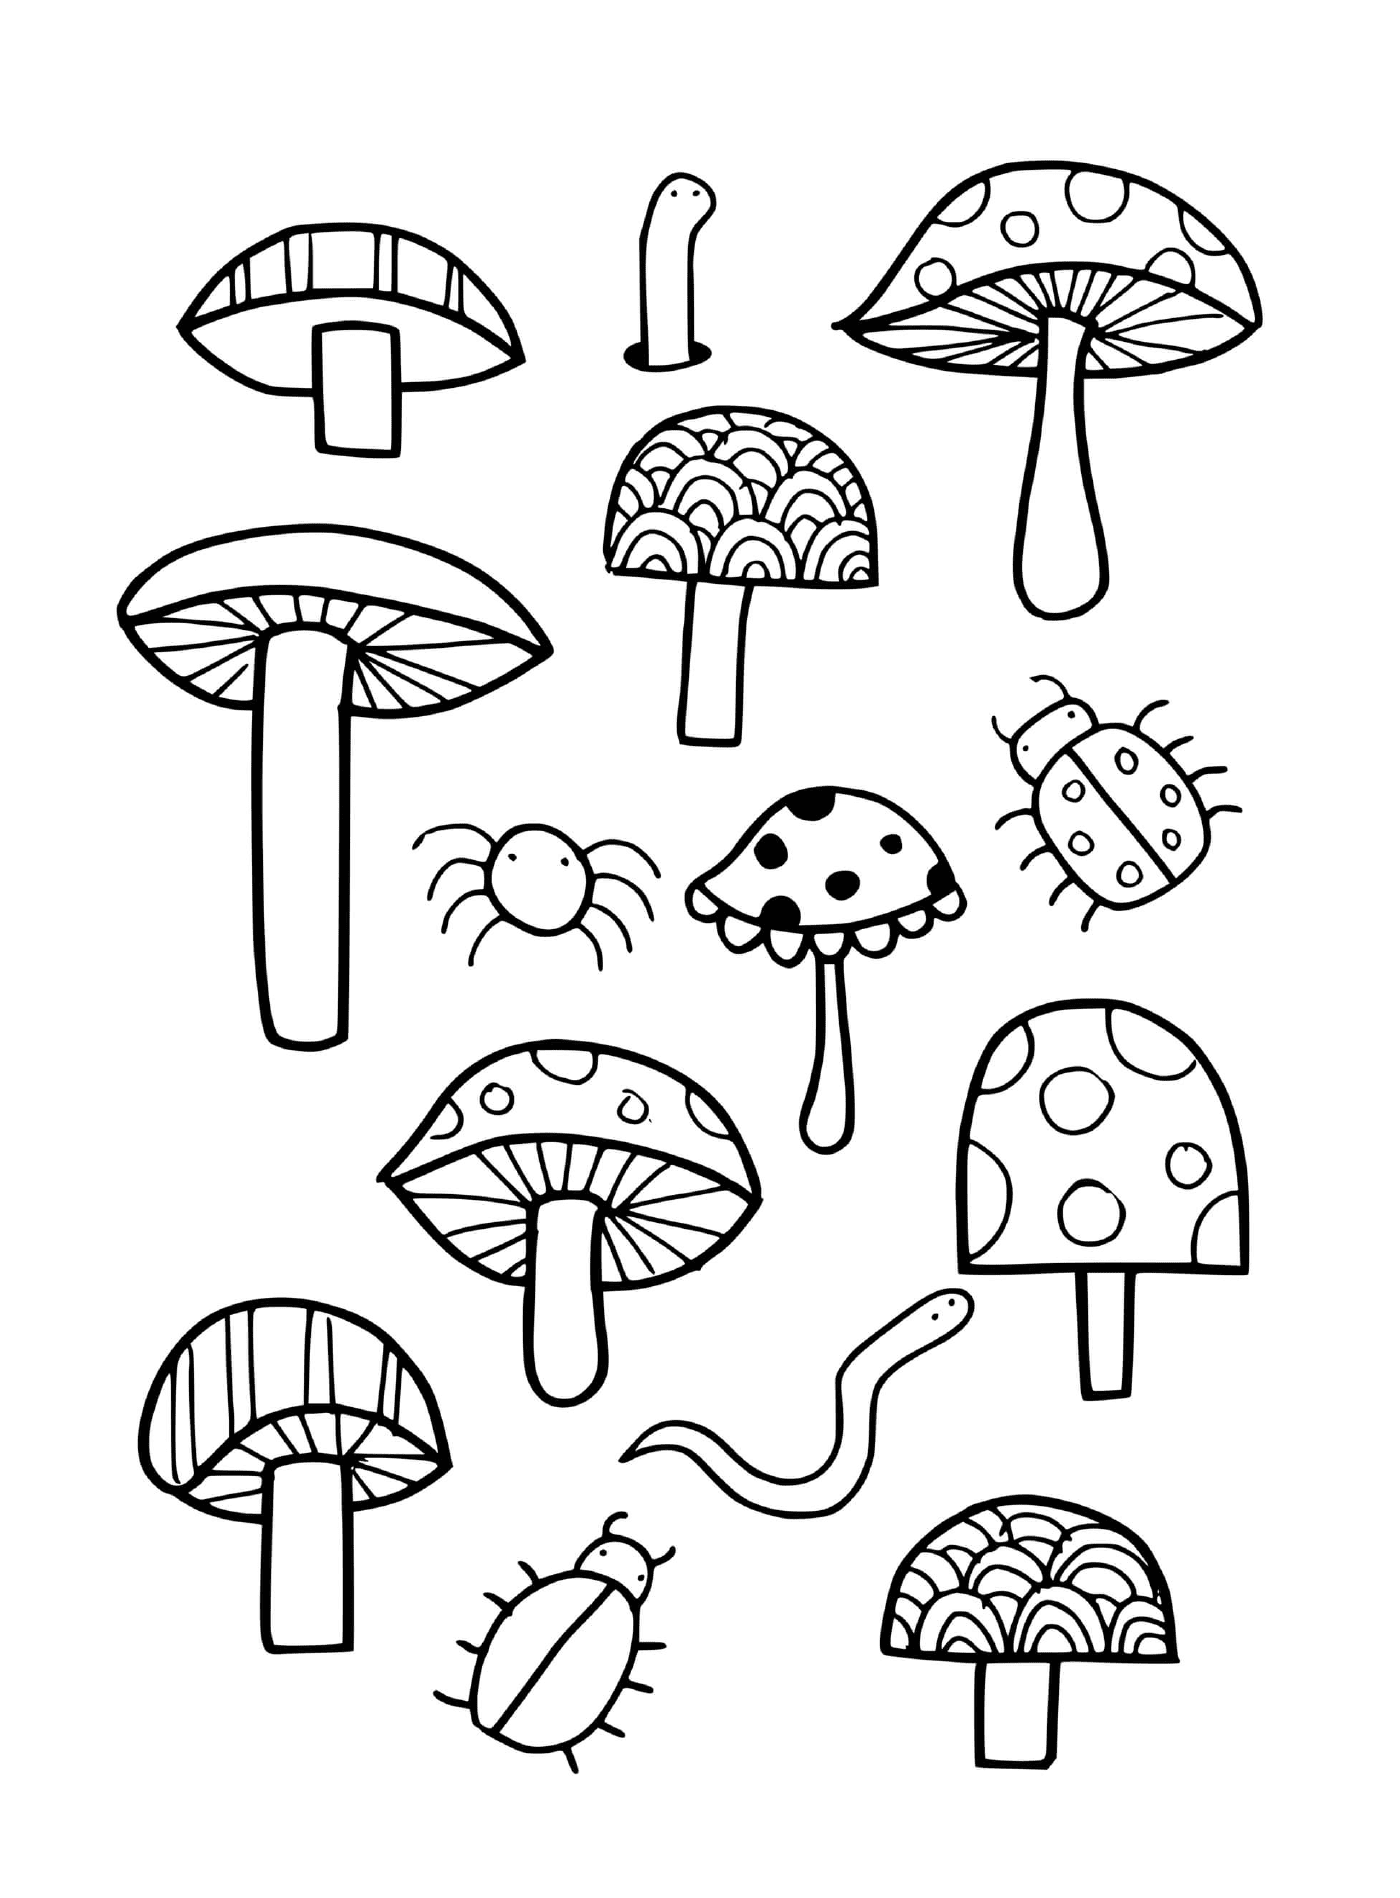  Funghi, coccinelle e ragni disegnati 